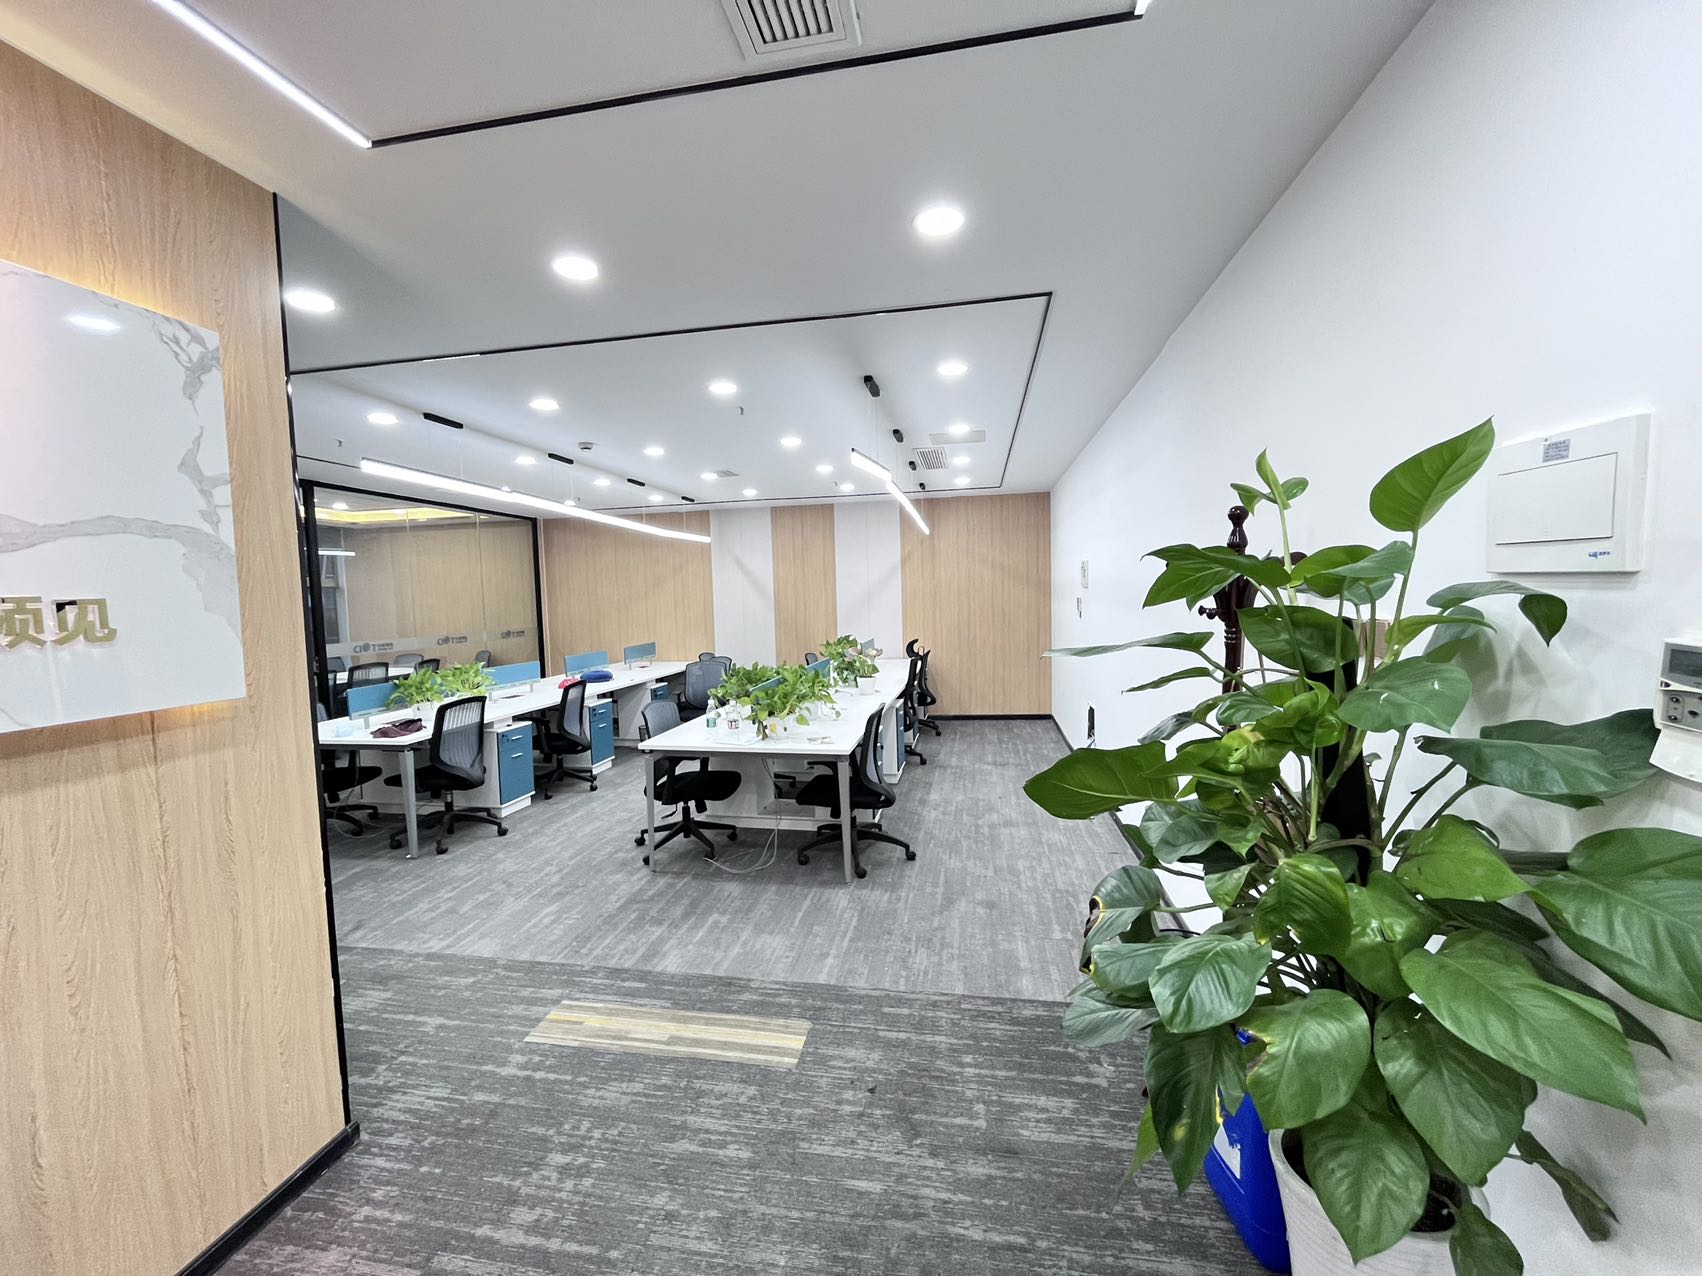 高新区世纪城蜀都中心150平精装办公室 户型方正 采光通透 全新家具含物业